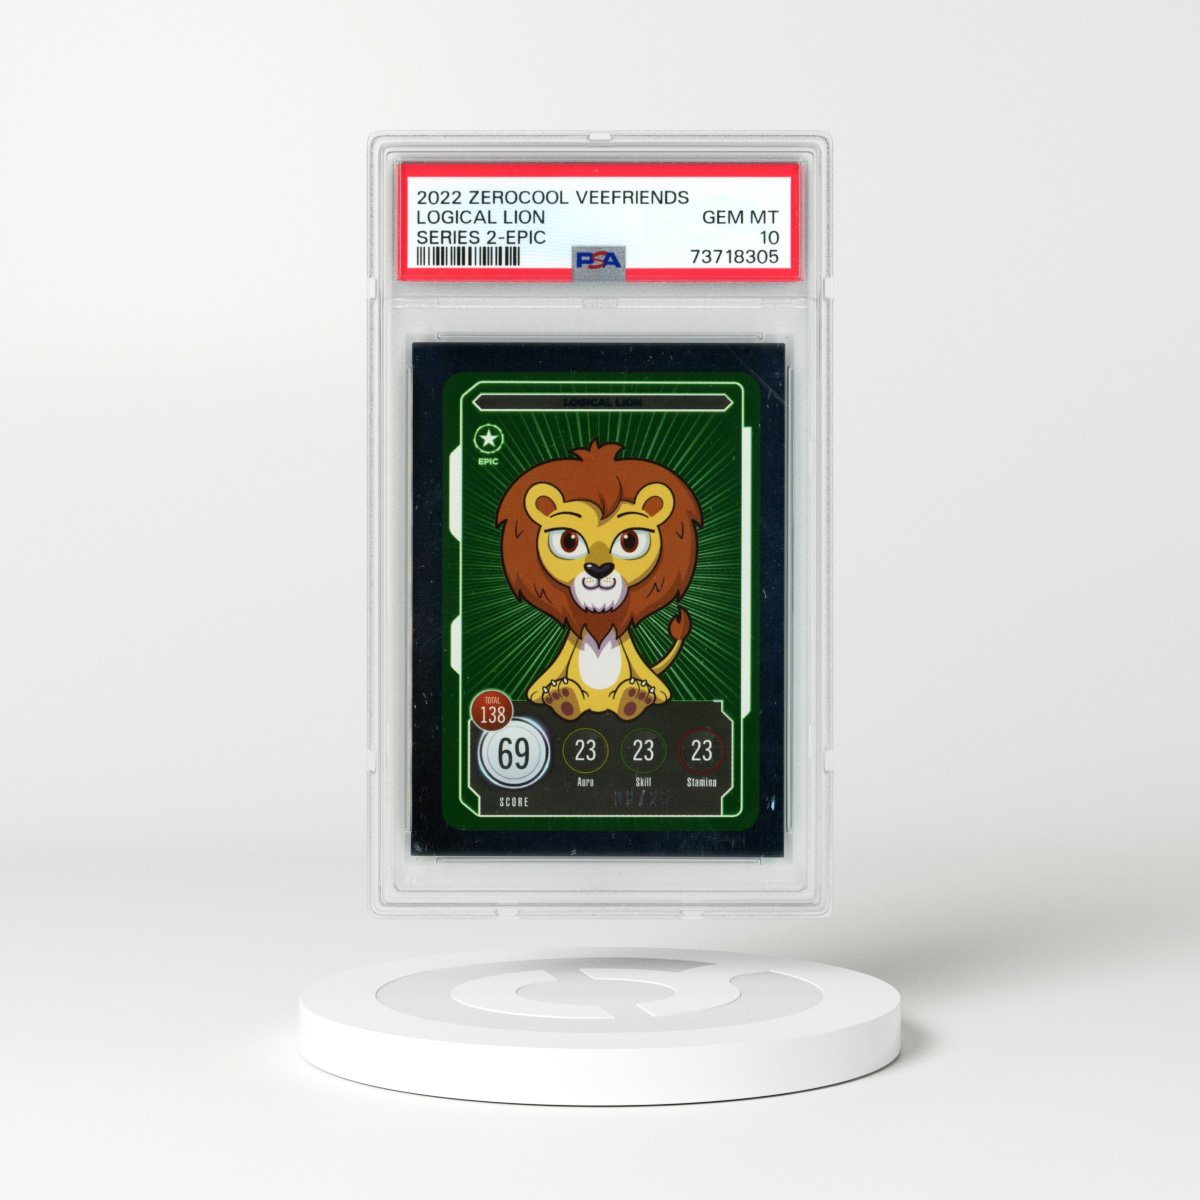 2022 Zerocool VeeFriends Logical Lion - Series 2 - Epic (PSA 10 GEM MINT)